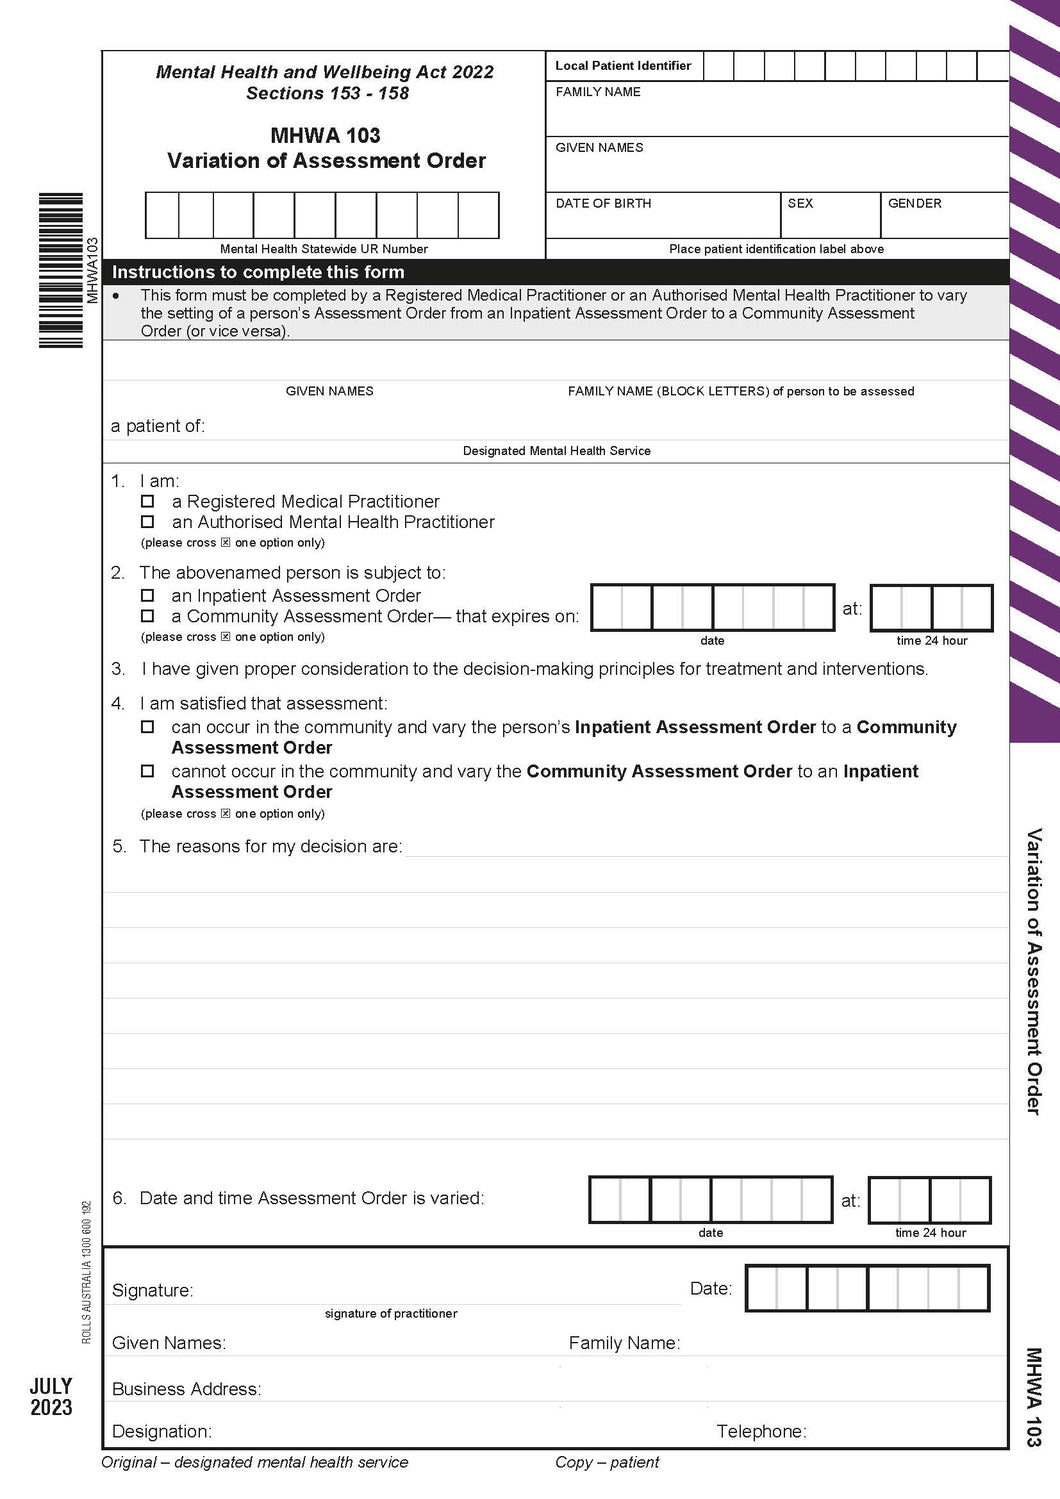 Rolls MHWA103 Variation of Assessment Order 2 part sets